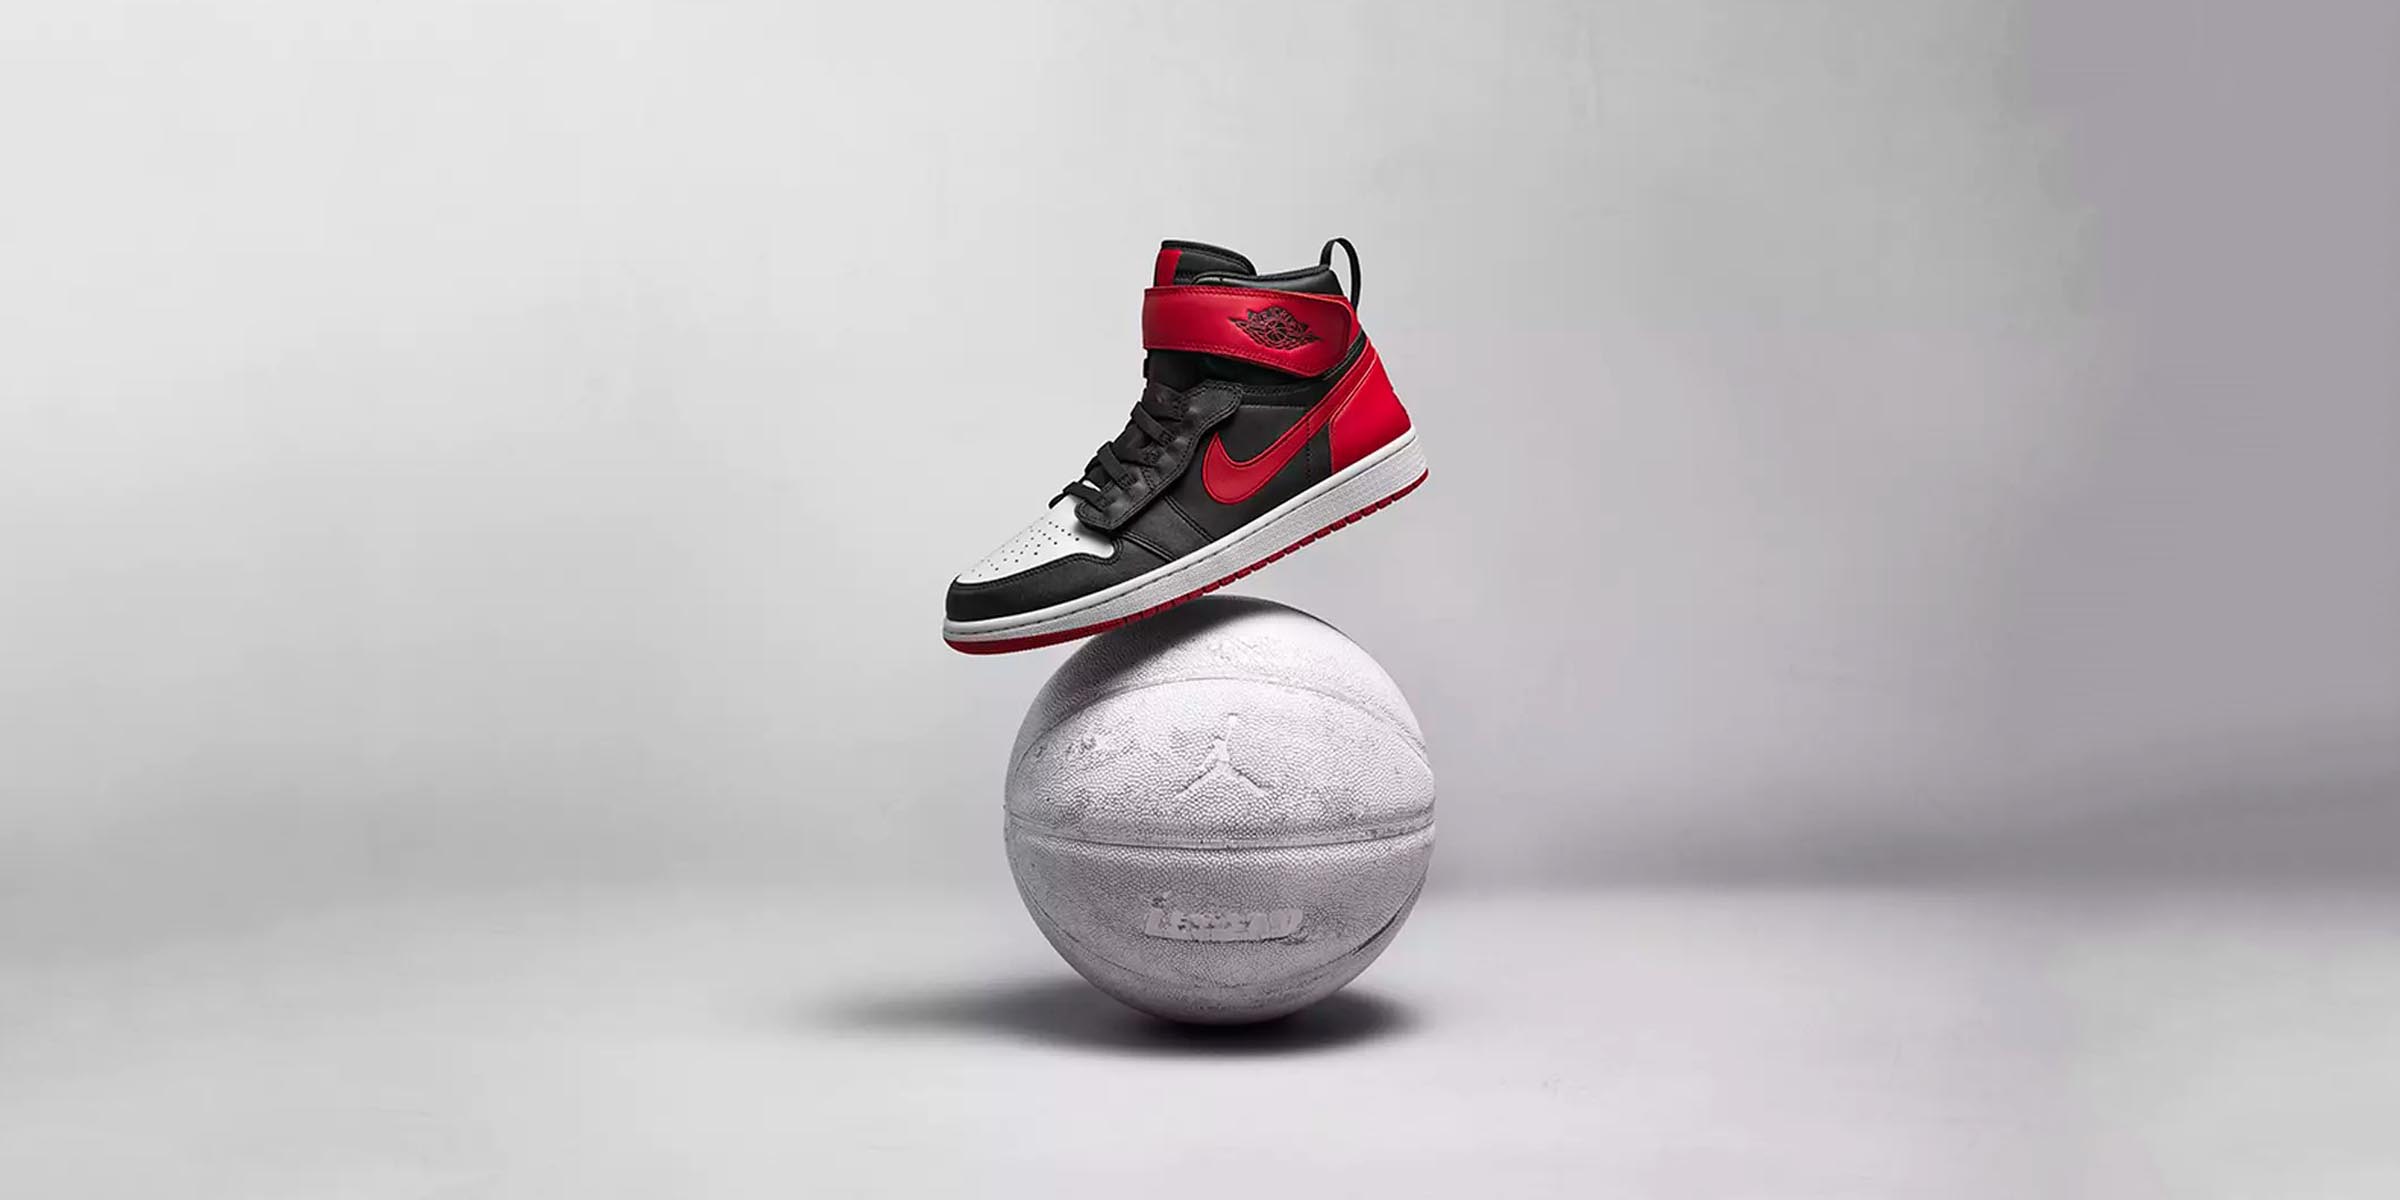 Air Jordan 1 On Feet: Styling The Air Jordan 1